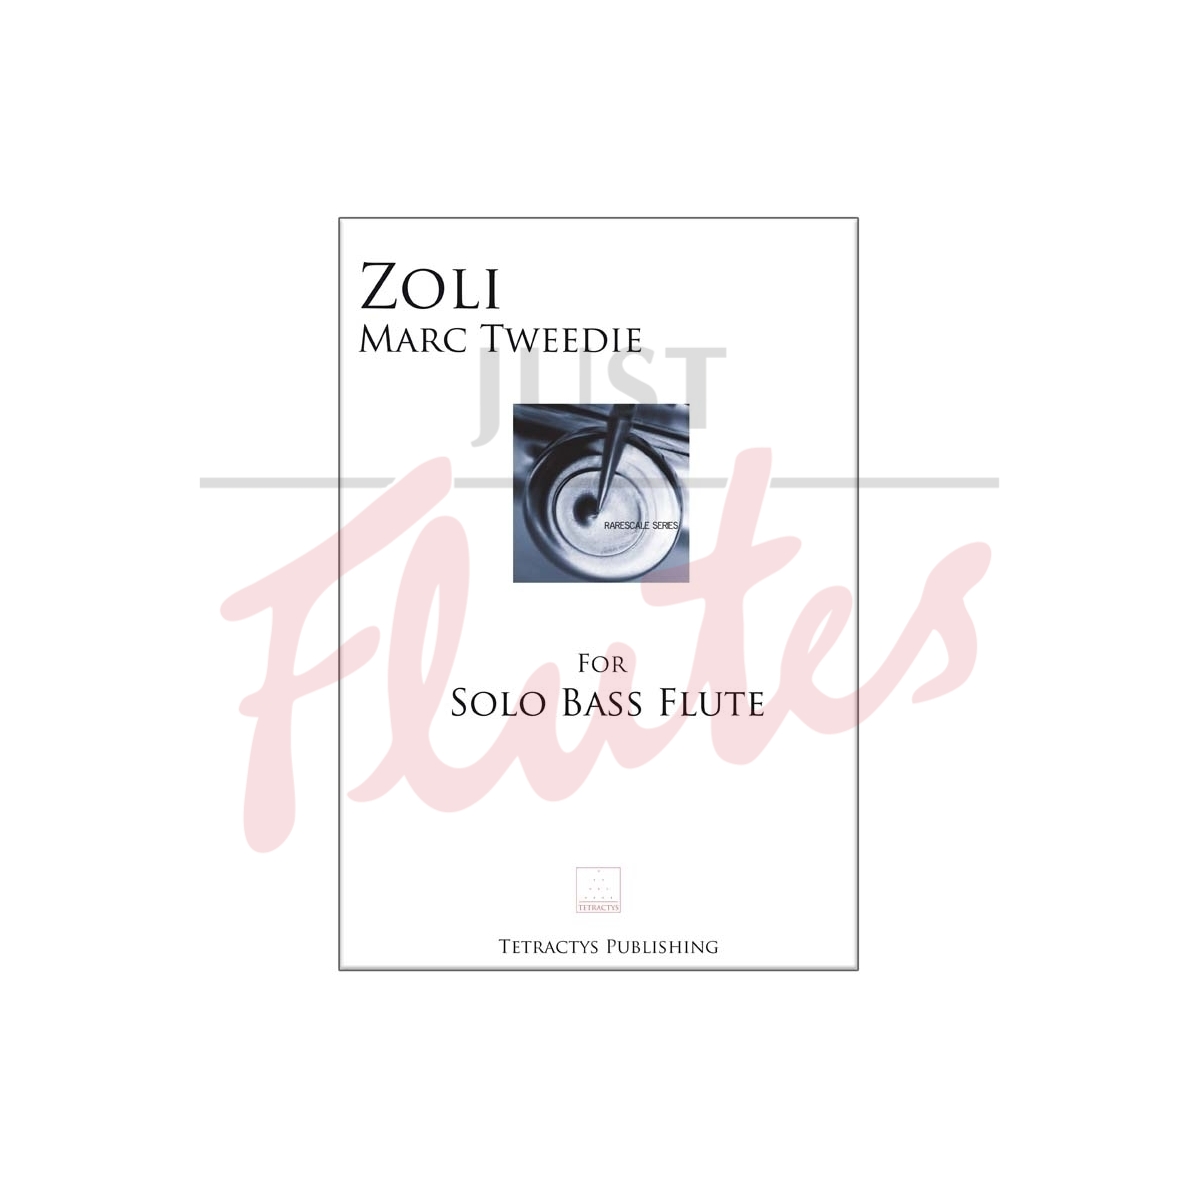 Zoli for solo bass flute